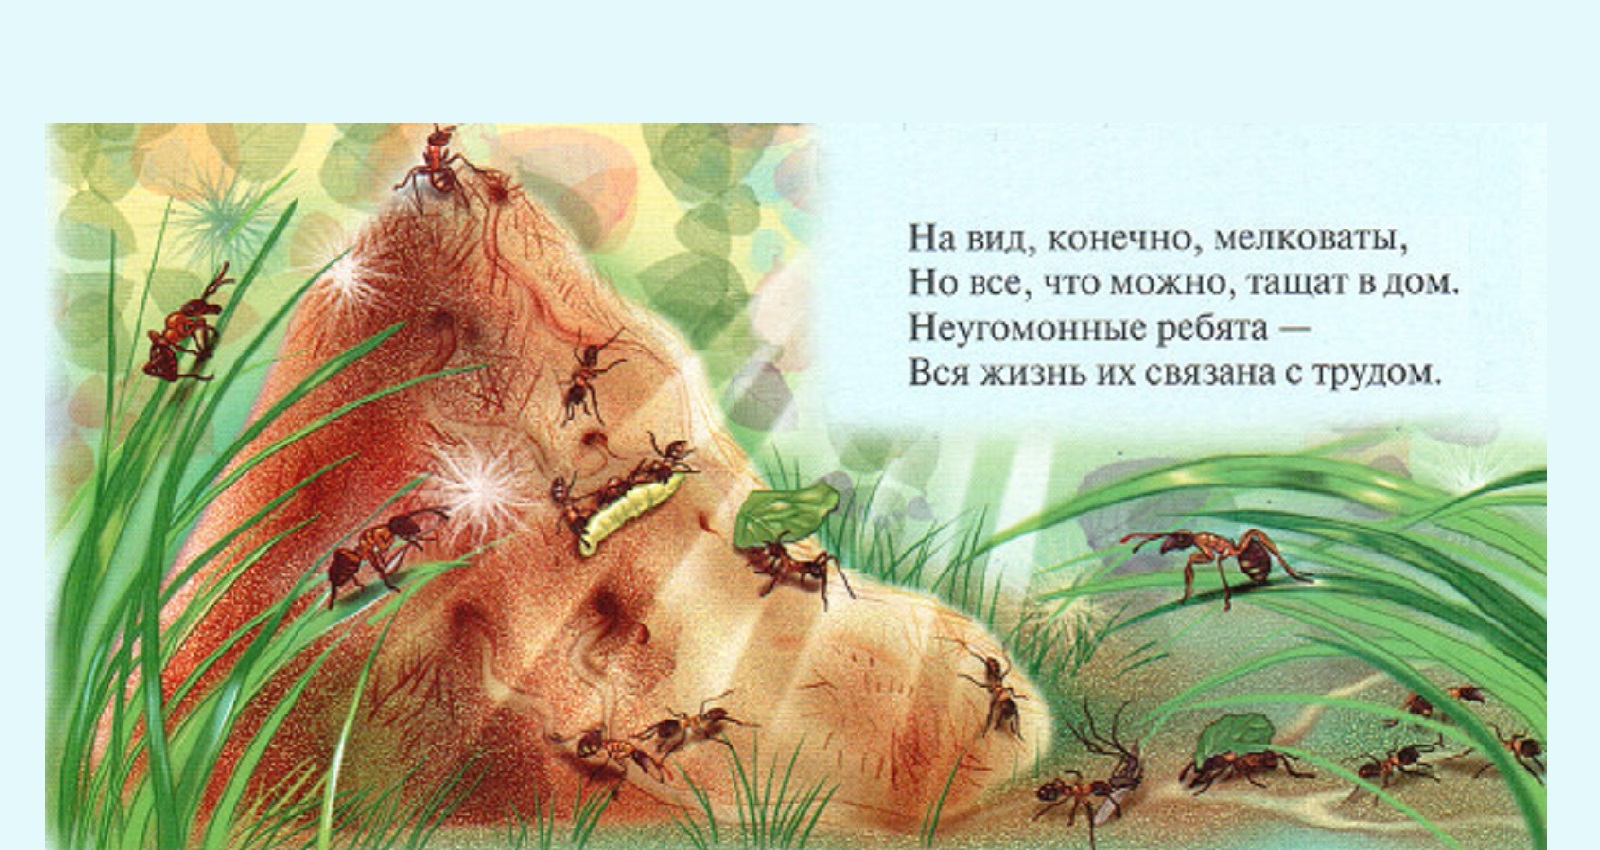 Загадки Про муравьев для детей | Загадки с ответами